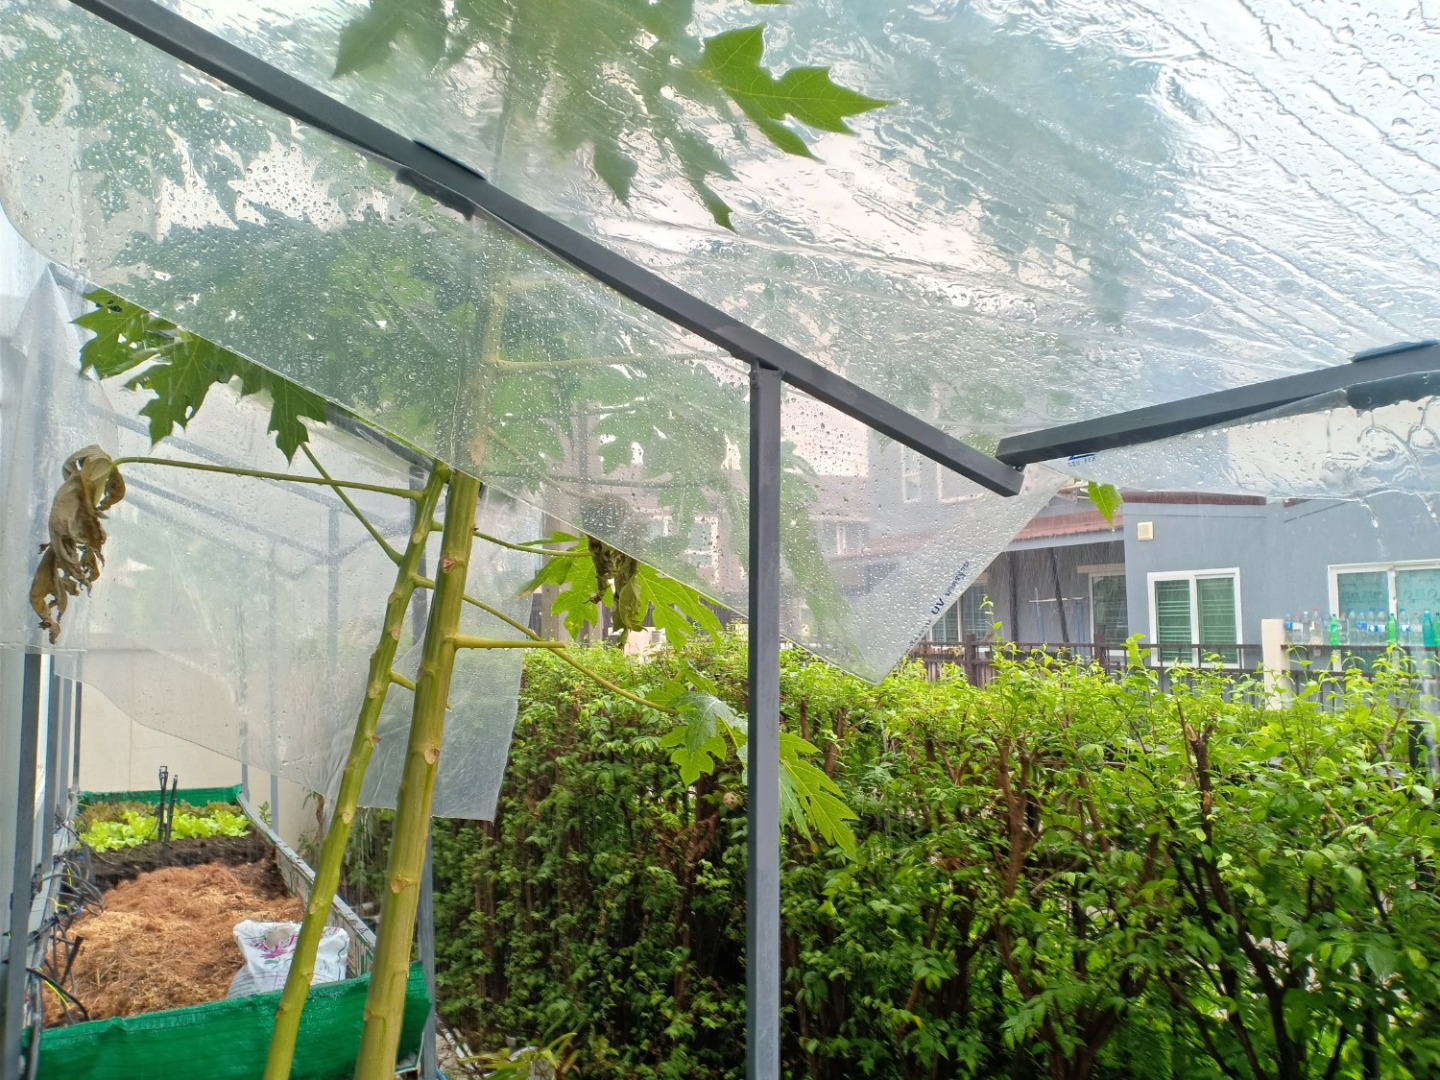 เปลี่ยนสวนข้างบ้านให้เป็น “แปลงผักออร์แกนิค” สำหรับเก็บกินเอง หรือปลูกขายเป็นรายได้เสริม